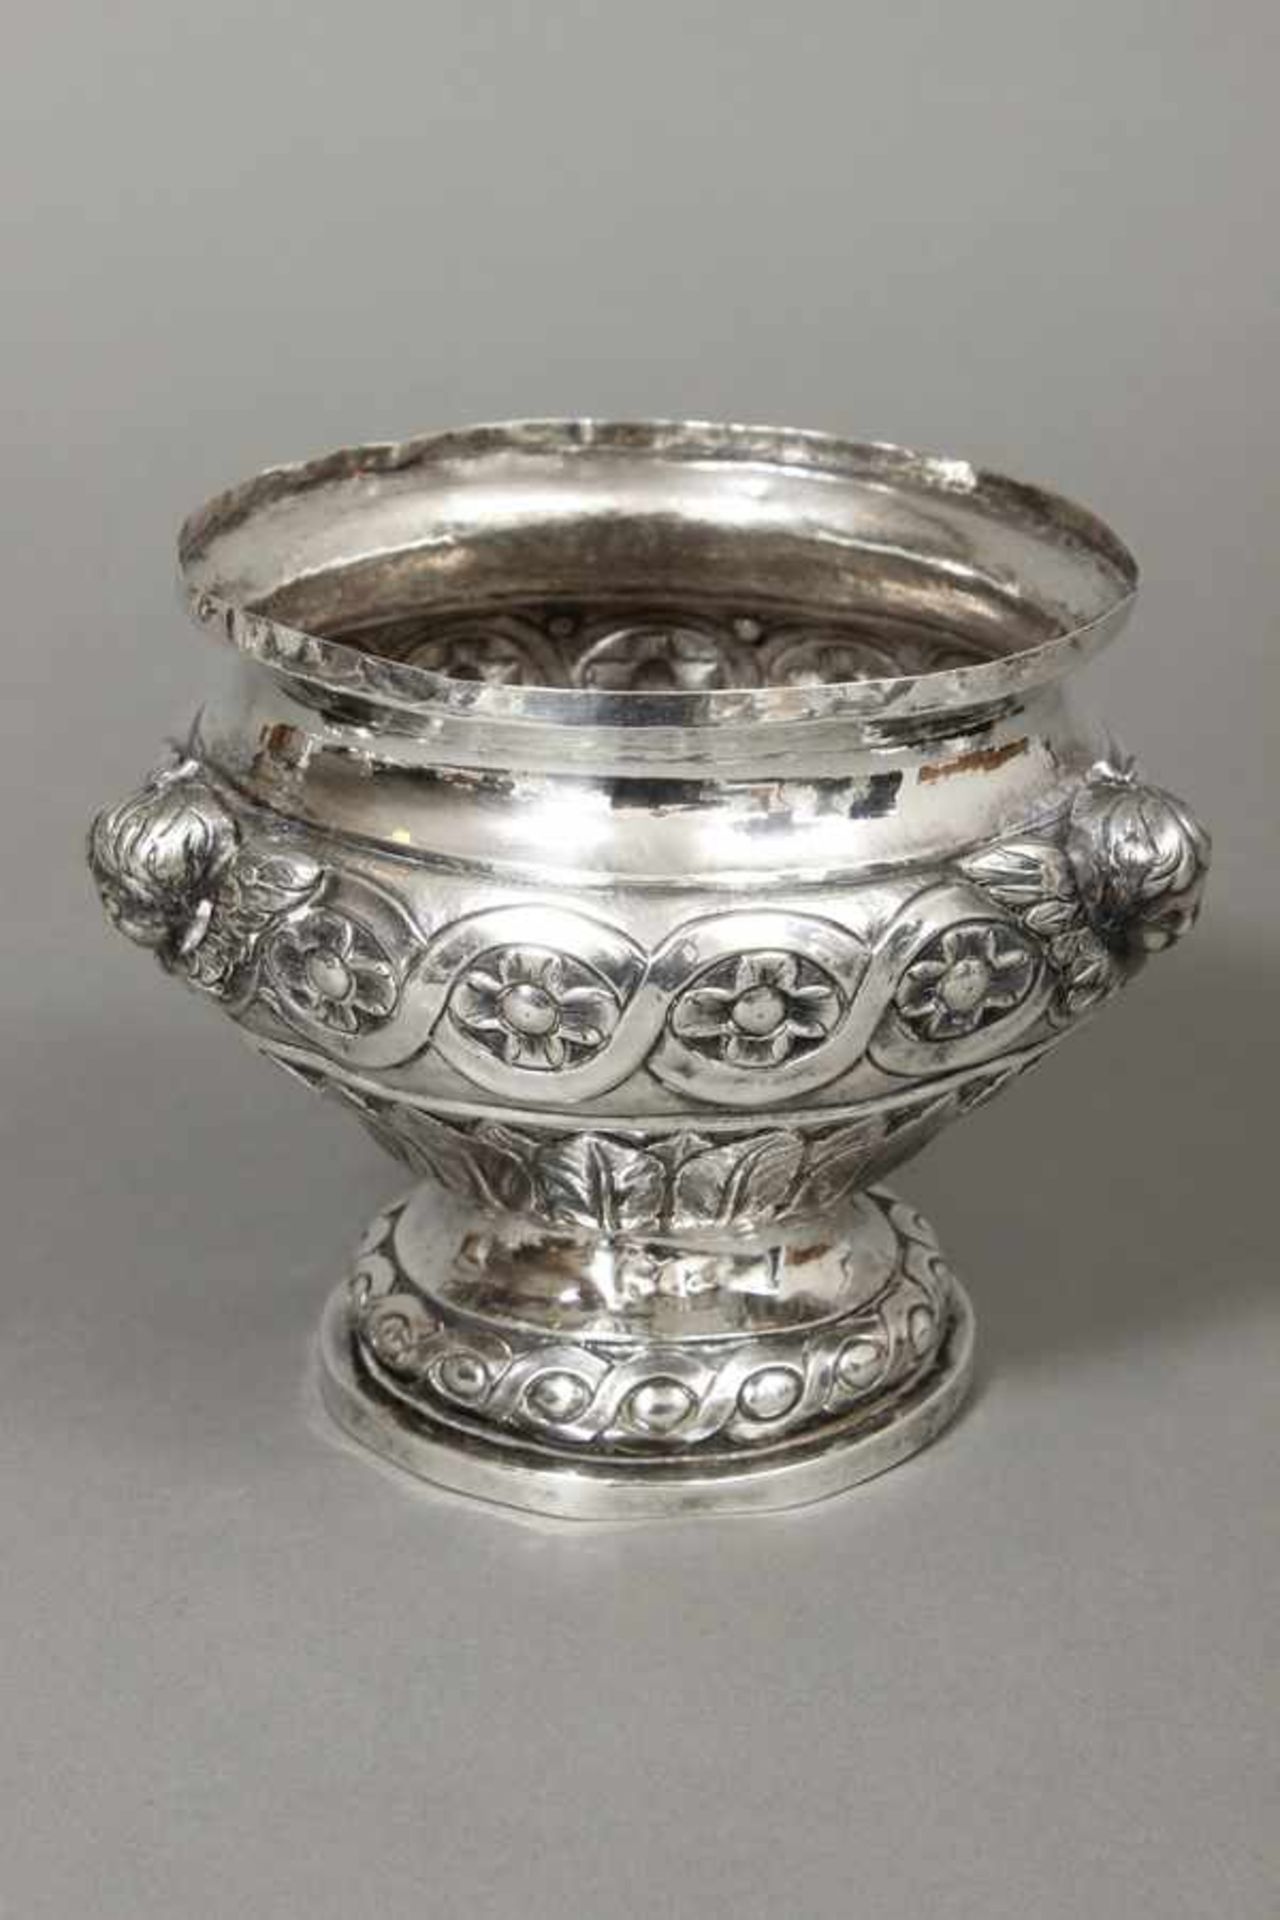 Silber-Vasengefäß ungepunzt, wohl 18. Jhdt., rundes, hochbauchiges Gefäß, Wandung mit Blätter-,